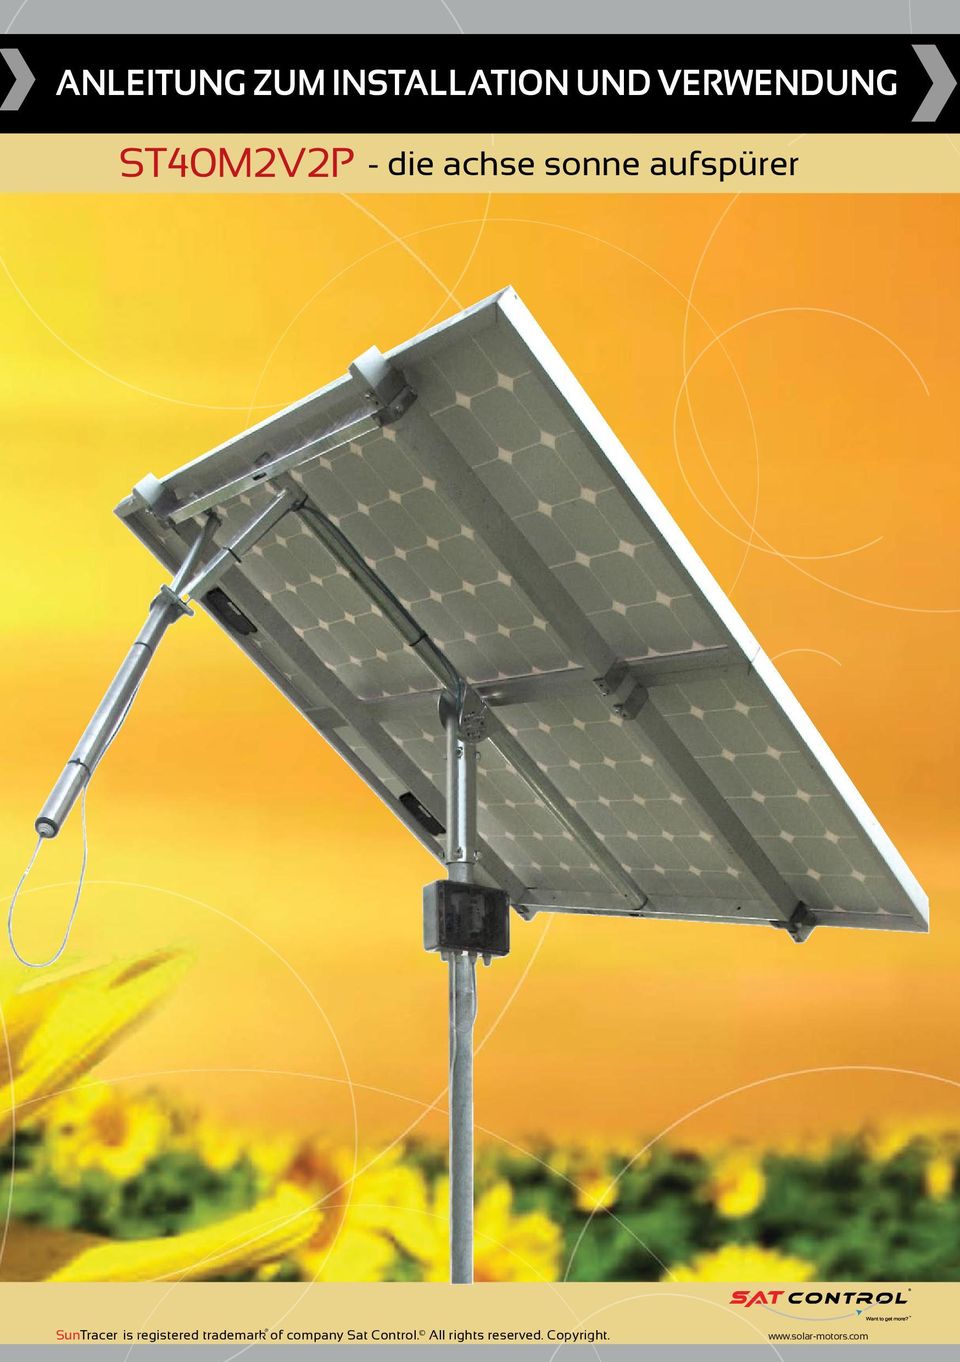 solar-motors.com, info@solar-motors.